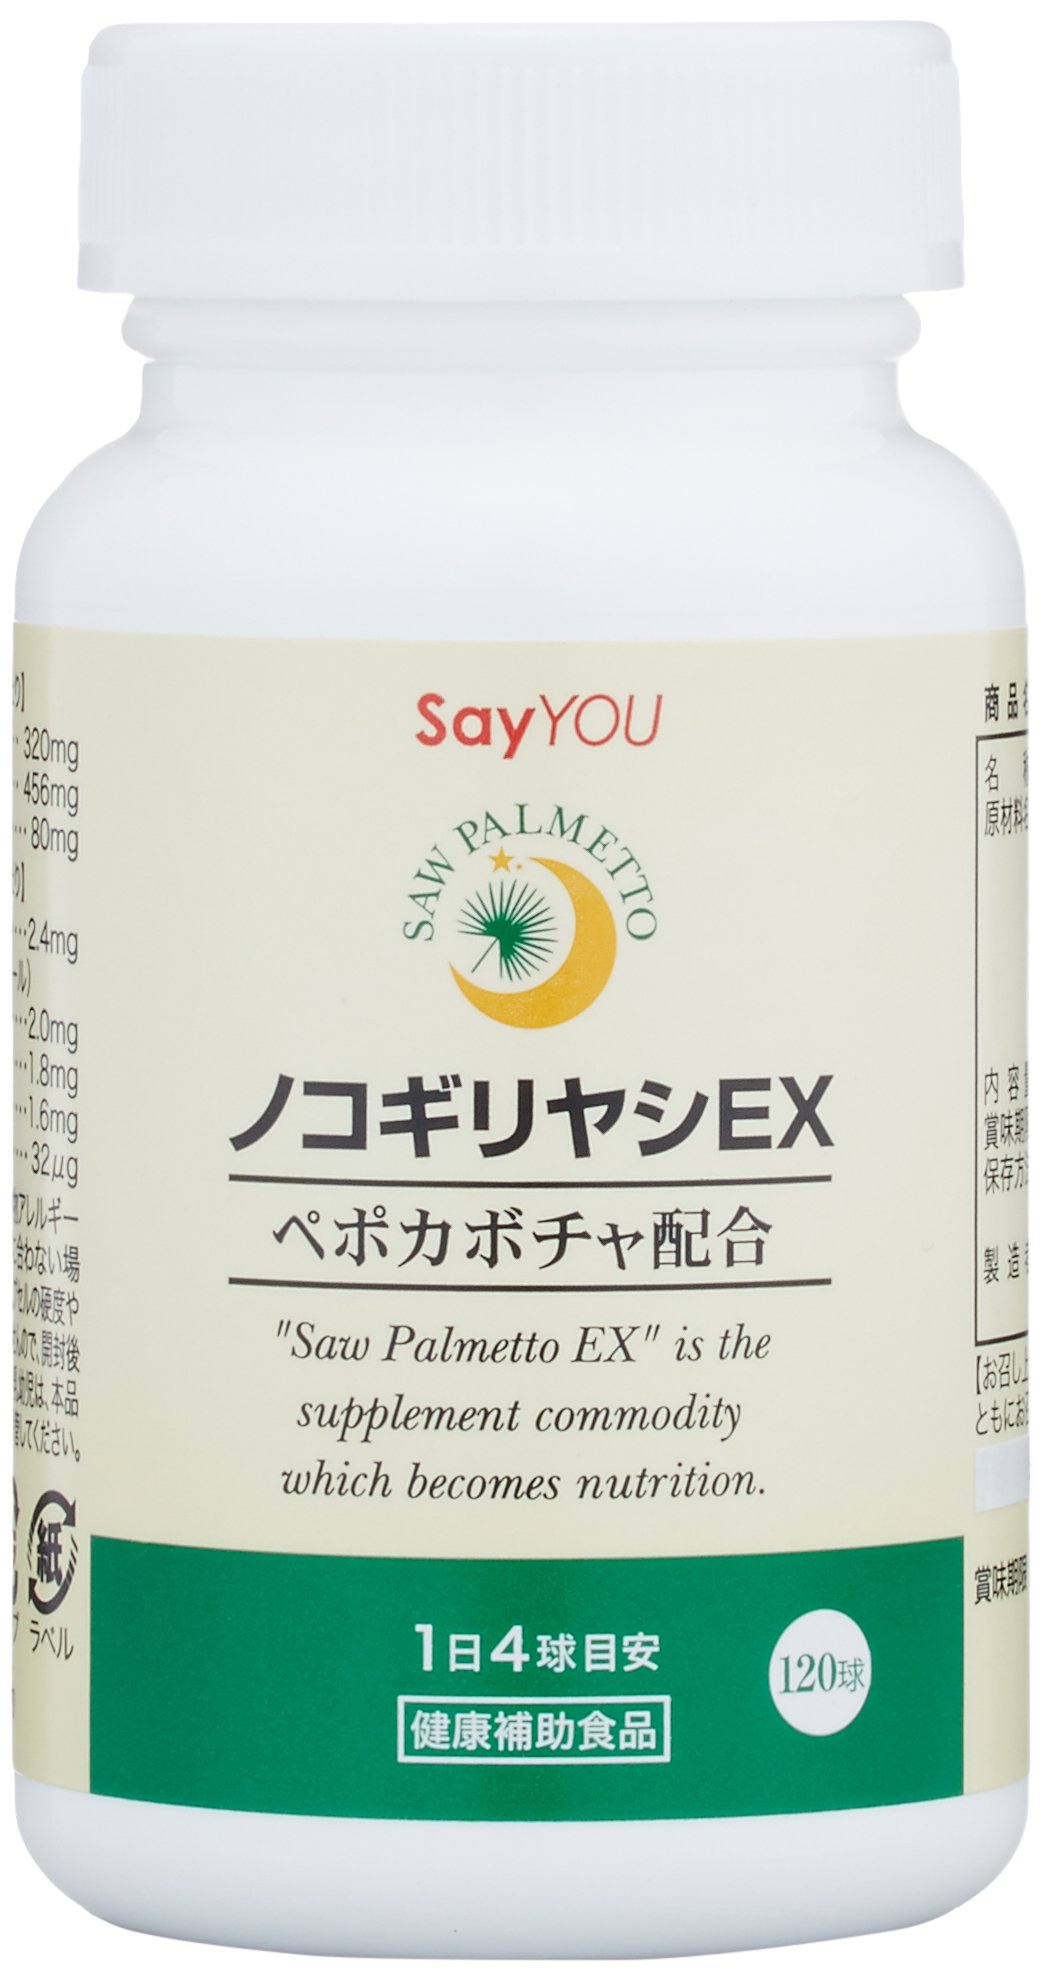 セイユーコーポレーション ノコギリヤシEX 健康補助食品 120球 (約30日分)